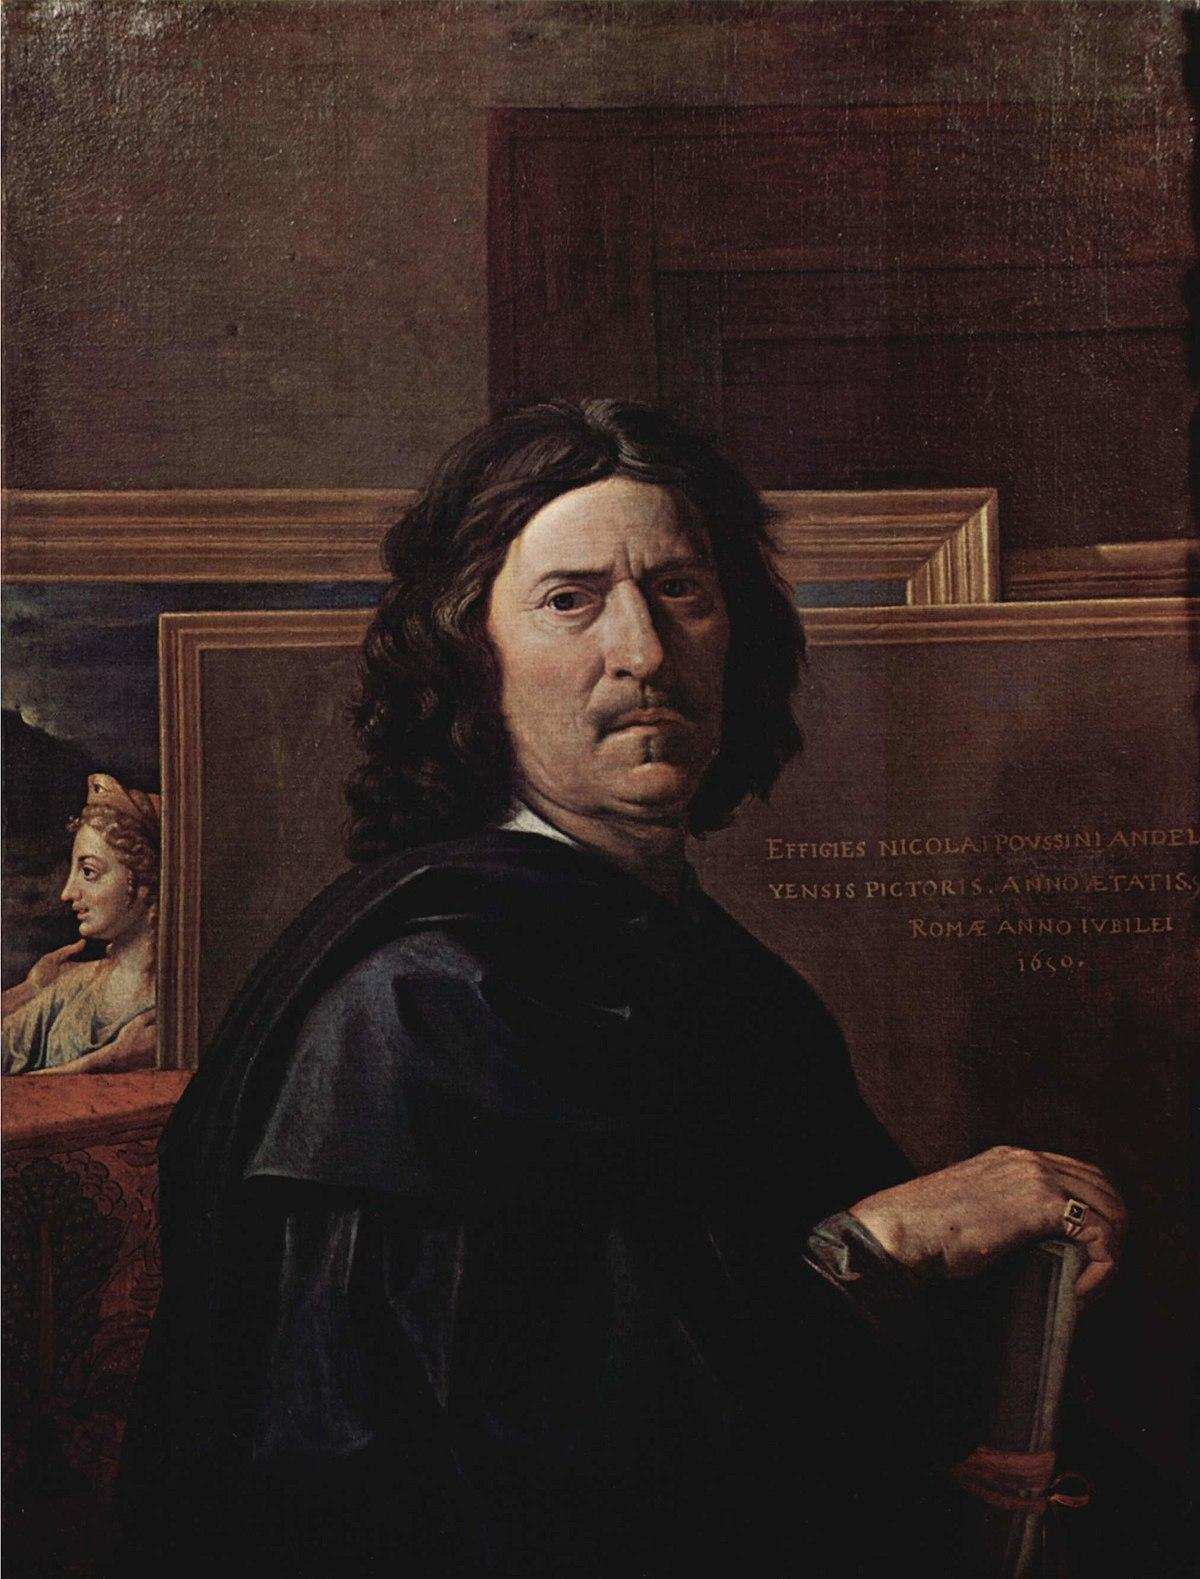 Nicolas Poussin Self-Portrait, Location: Louvre Museum, Paris